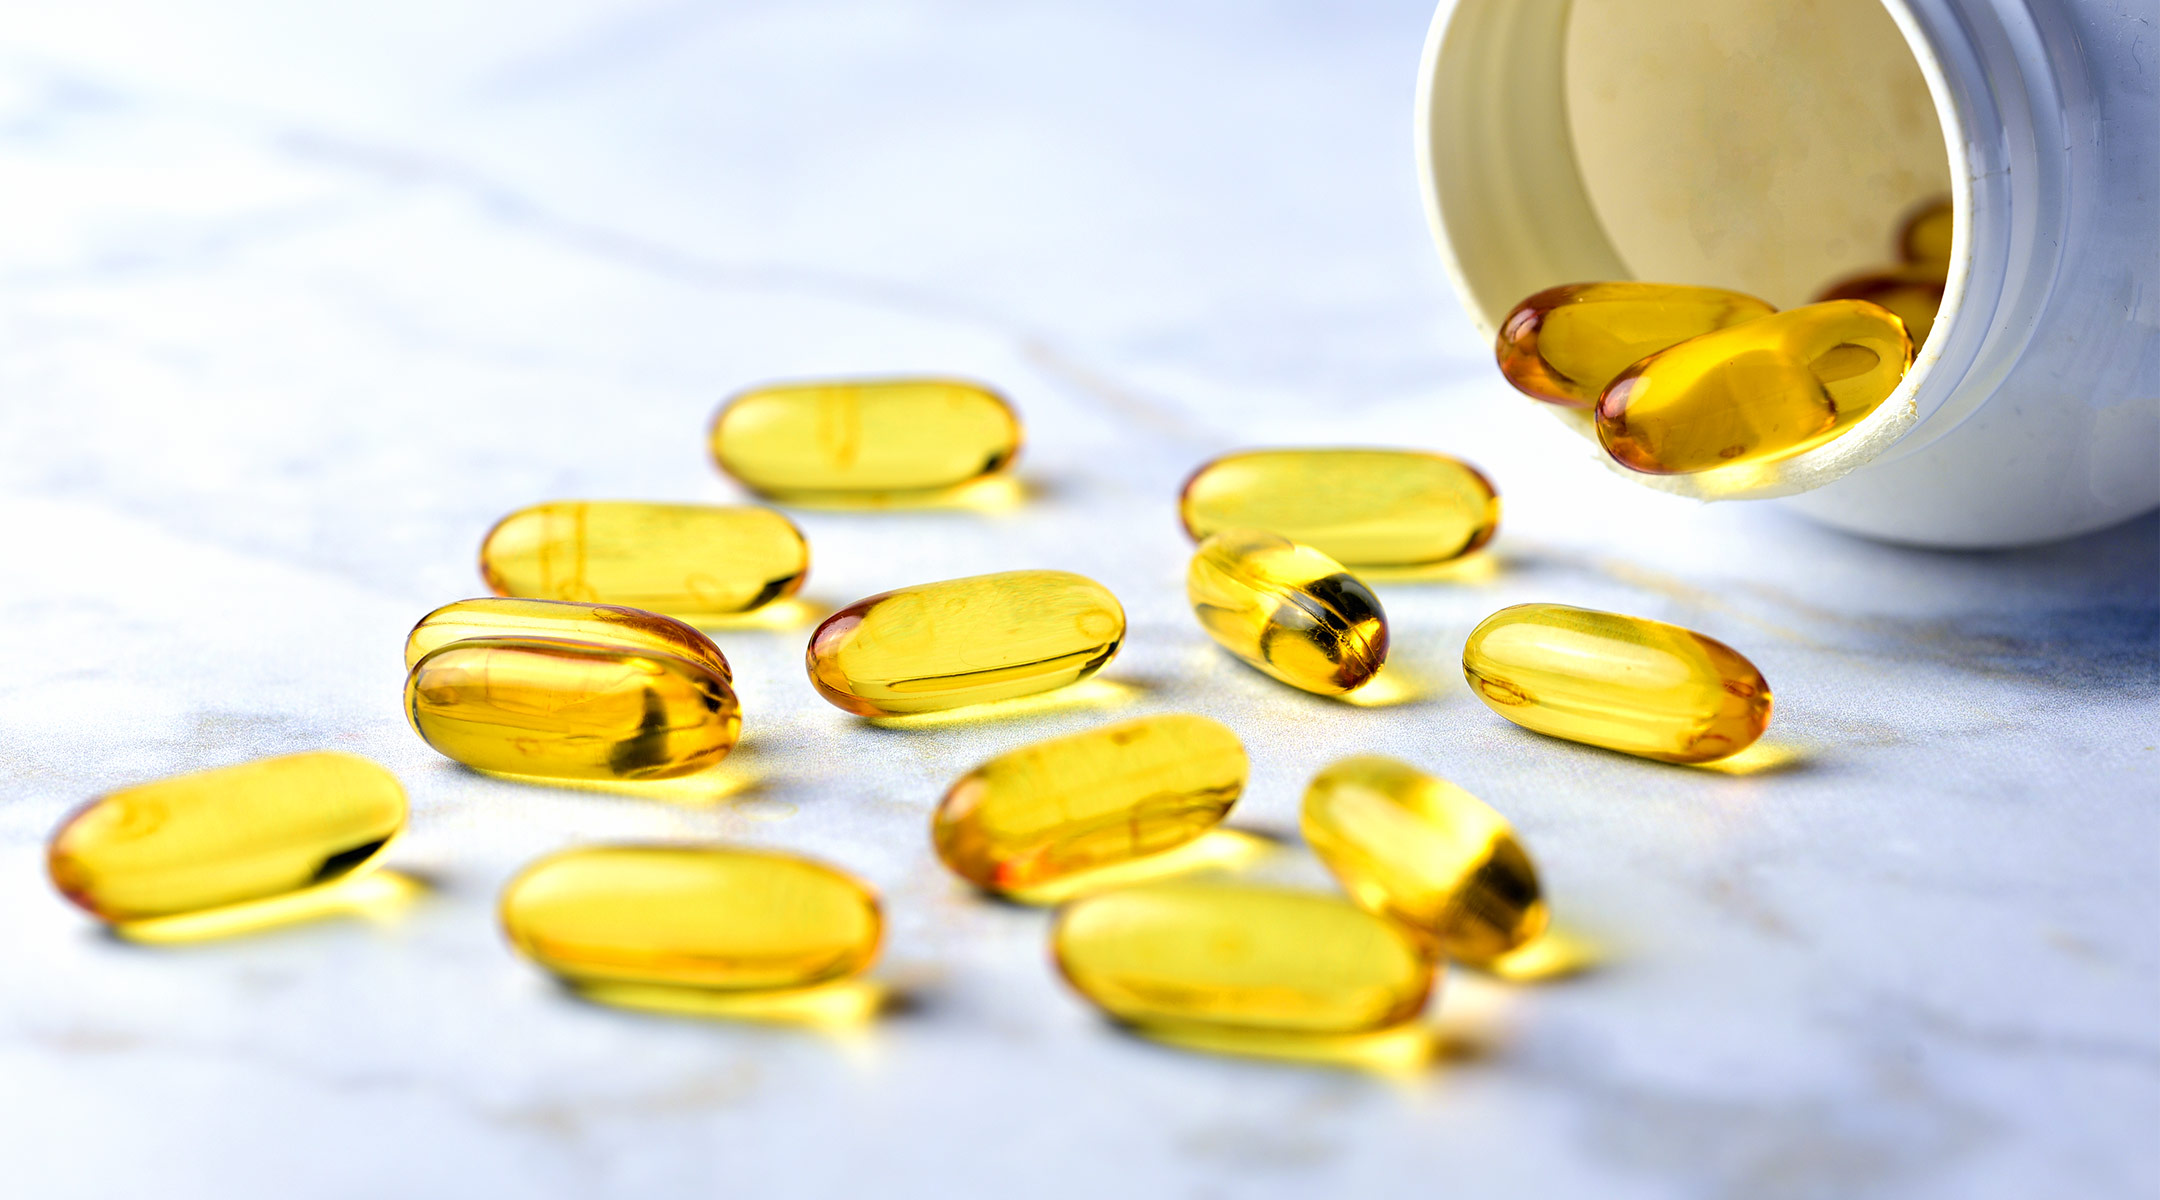 omega 3 fatty acid supplement can prevent premature birth